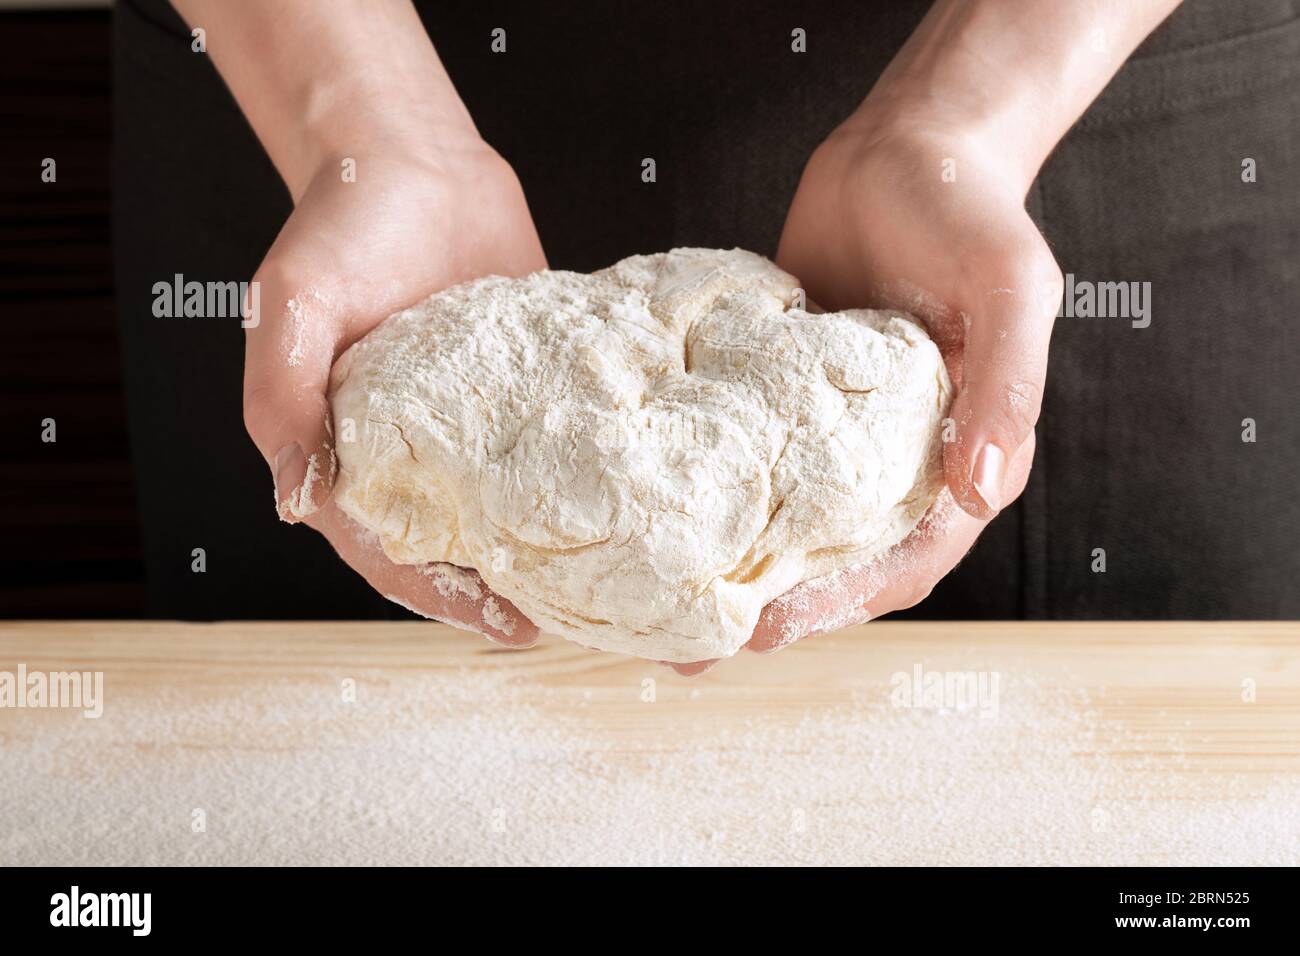 Vista frontale delle mani femminili trattenete l'impasto per cuocere pizza, pane, torte o torte. Ricetta passo-passo per cucinare ravioli o gnocchi, passo 5. Foto Stock